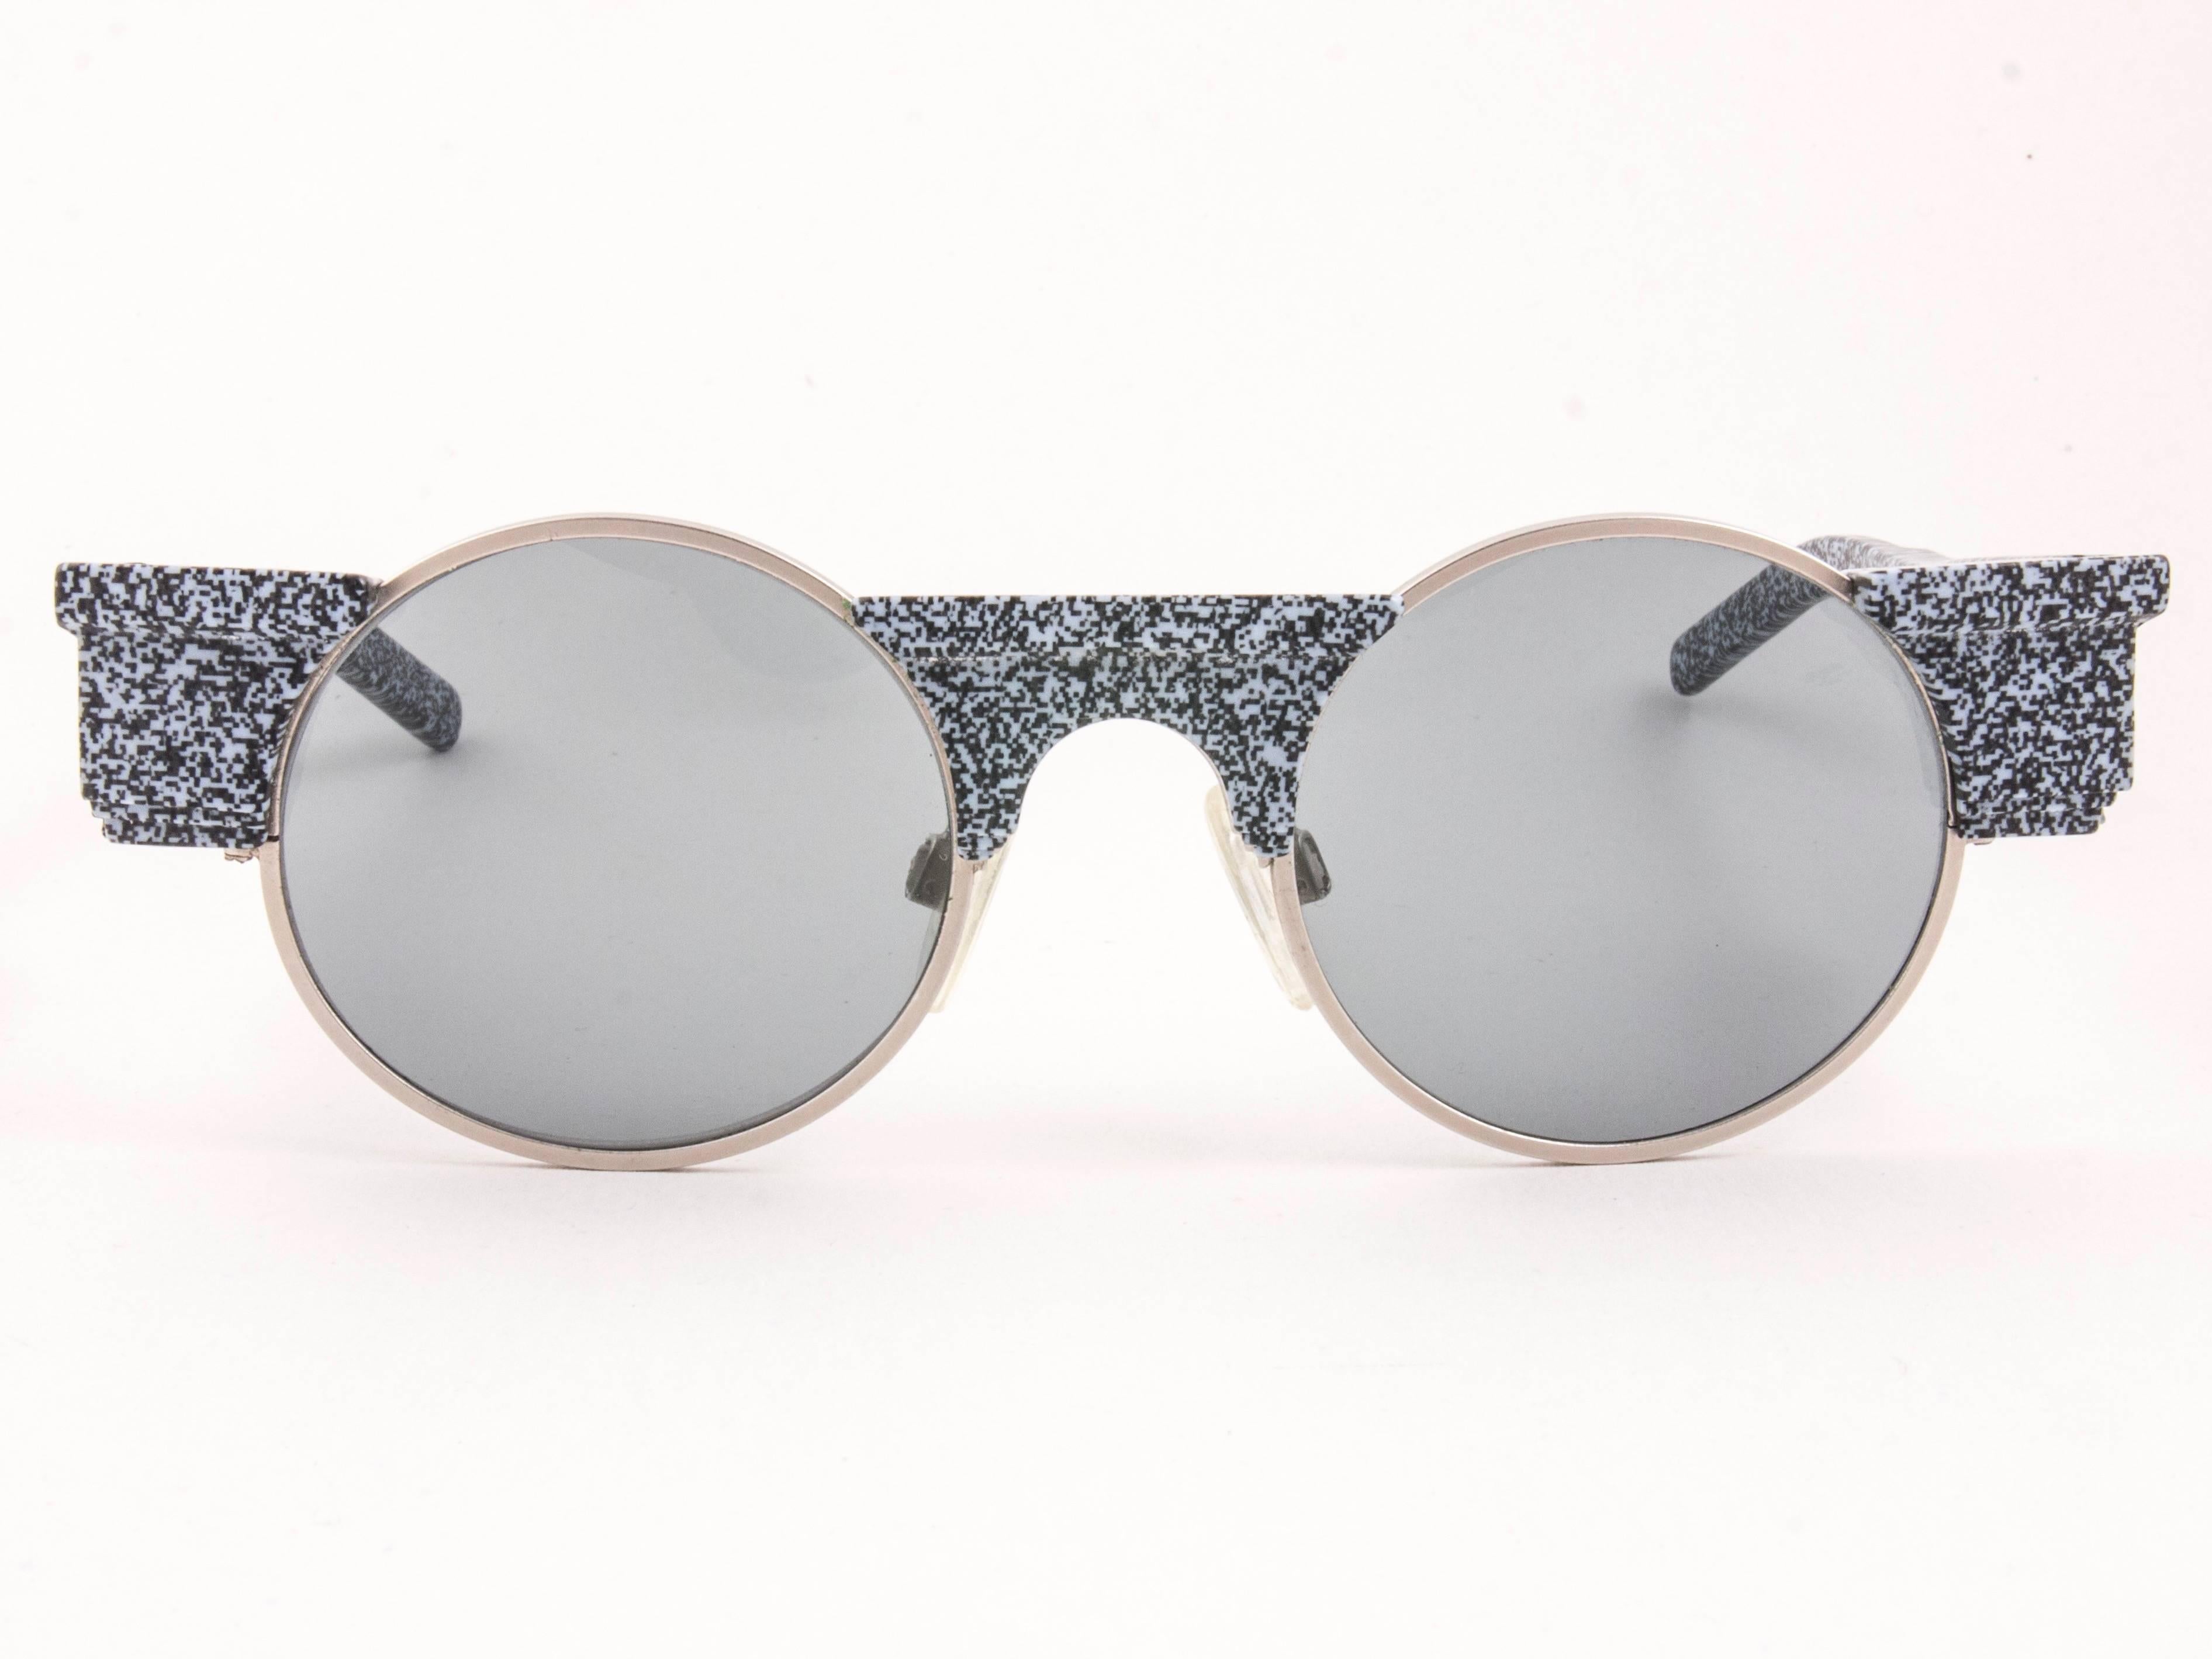 Auffällige, grau marmorierte Vintage-Sonnenbrille Karl Lagerfeld Round 0599 mit makellosen grauen Gläsern. 
Hervorragendes Design, das der antiken griechischen Architektur nachempfunden ist.   
Neu, nie benutzt oder ausgestellt, ist dieses Paar von